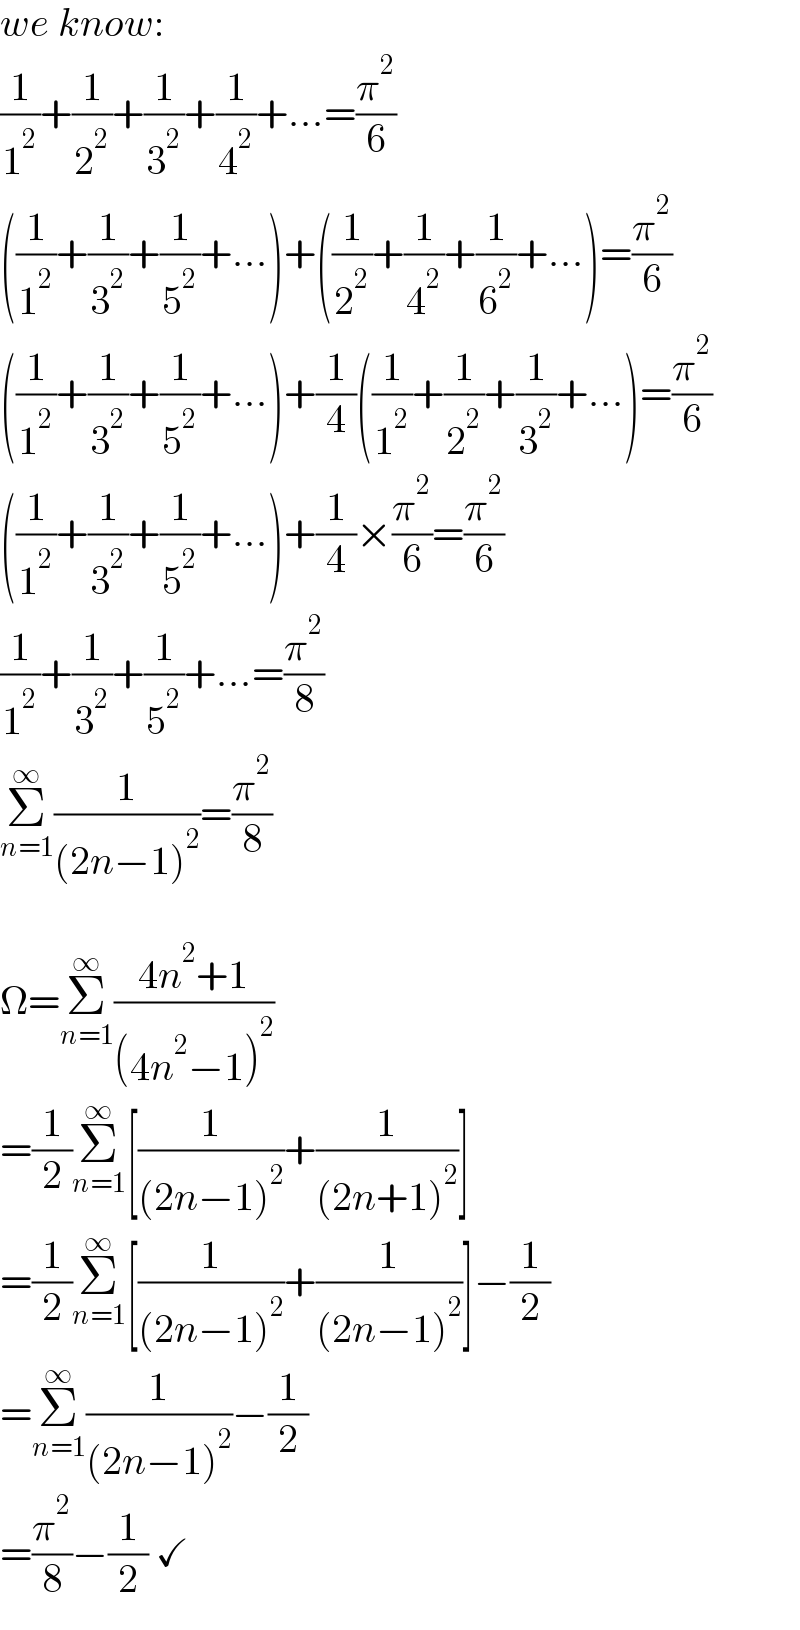 we know:  (1/1^2 )+(1/2^2 )+(1/3^2 )+(1/4^2 )+...=(π^2 /6)  ((1/1^2 )+(1/3^2 )+(1/5^2 )+...)+((1/2^2 )+(1/4^2 )+(1/6^2 )+...)=(π^2 /6)  ((1/1^2 )+(1/3^2 )+(1/5^2 )+...)+(1/4)((1/1^2 )+(1/2^2 )+(1/3^2 )+...)=(π^2 /6)  ((1/1^2 )+(1/3^2 )+(1/5^2 )+...)+(1/4)×(π^2 /6)=(π^2 /6)  (1/1^2 )+(1/3^2 )+(1/5^2 )+...=(π^2 /8)  Σ_(n=1) ^∞ (1/((2n−1)^2 ))=(π^2 /8)    Ω=Σ_(n=1) ^∞ ((4n^2 +1)/((4n^2 −1)^2 ))  =(1/2)Σ_(n=1) ^∞ [(1/((2n−1)^2 ))+(1/((2n+1)^2 ))]  =(1/2)Σ_(n=1) ^∞ [(1/((2n−1)^2 ))+(1/((2n−1)^2 ))]−(1/2)  =Σ_(n=1) ^∞ (1/((2n−1)^2 ))−(1/2)  =(π^2 /8)−(1/2) ✓  